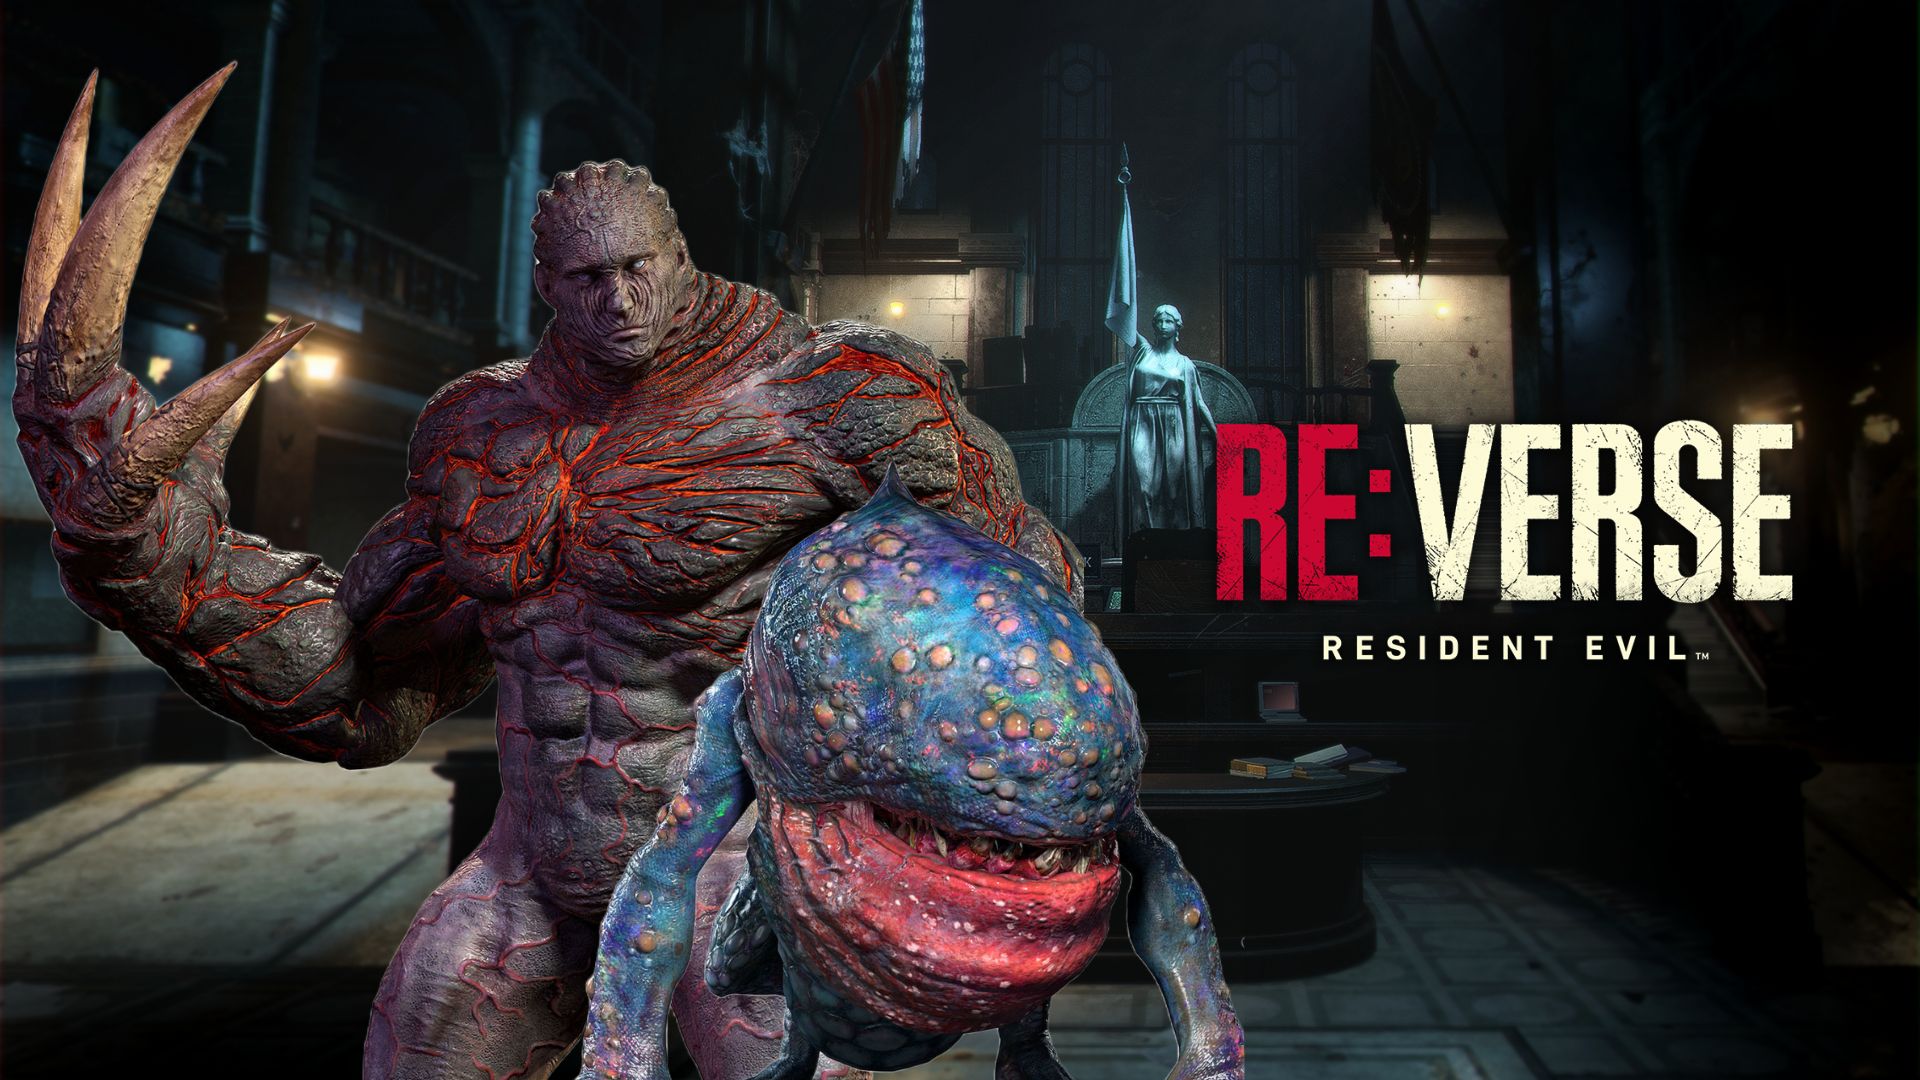 Resident Evil Outbreak Remake? Veja